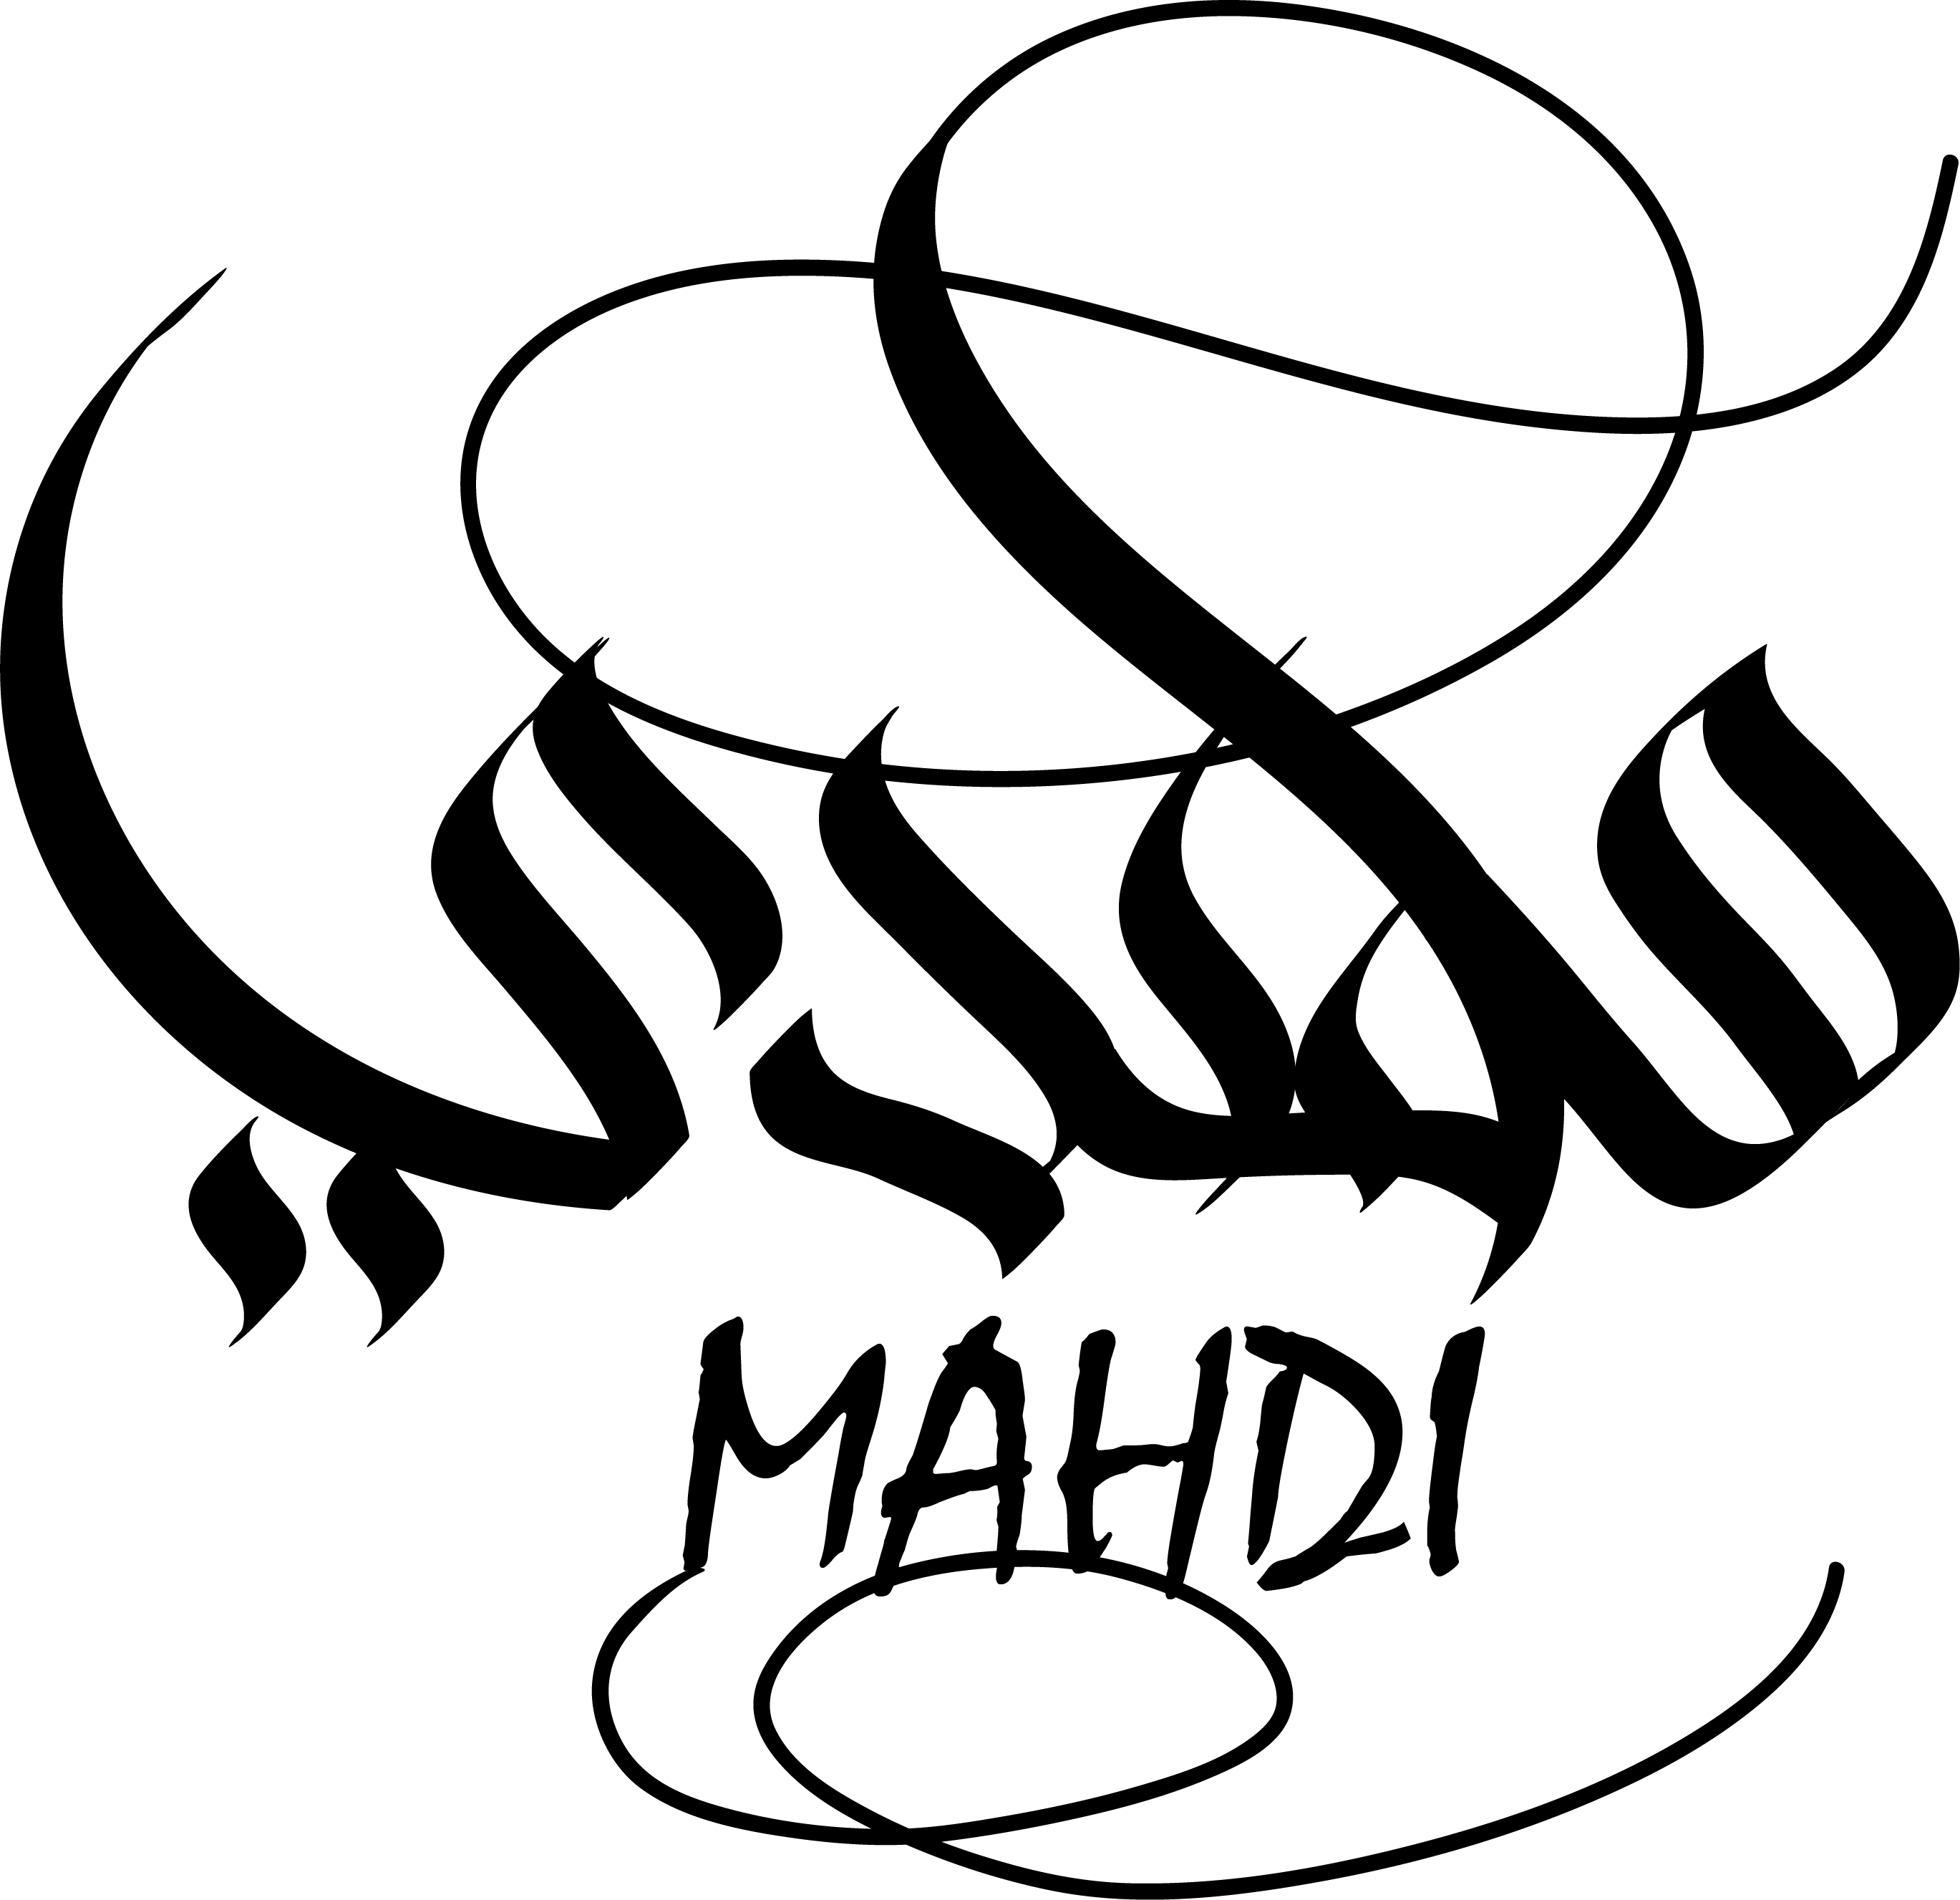 Mahdi AlRaimi